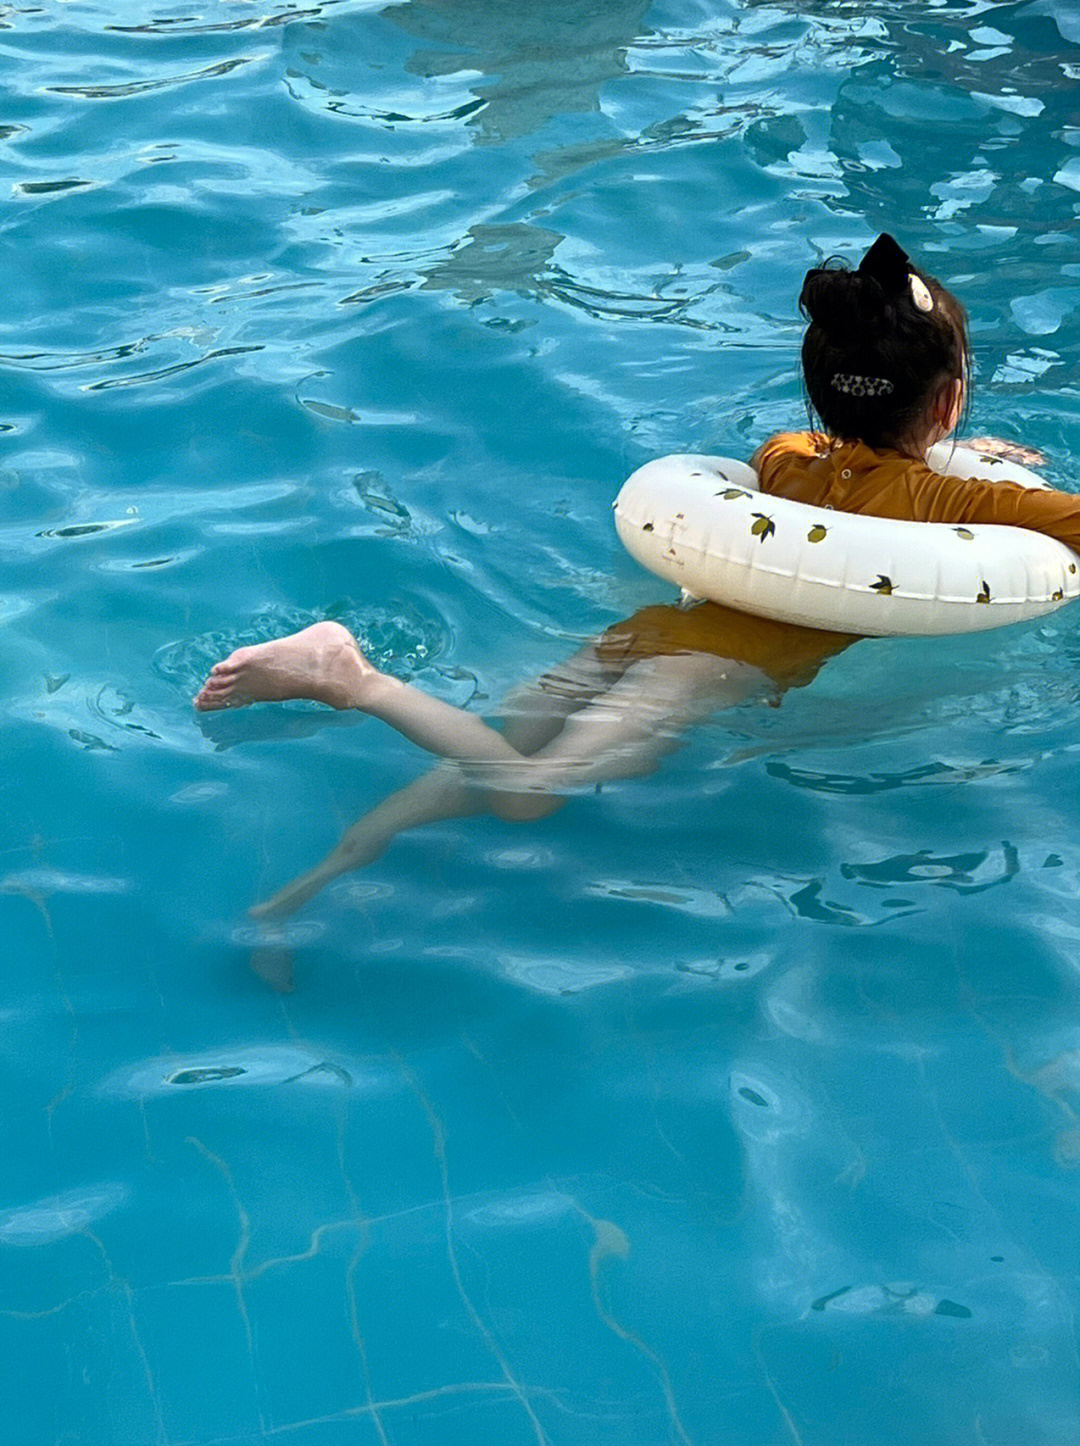 在酒店泳池也能玩个半天,虽然还不会游泳9069♀15,小朋友天性